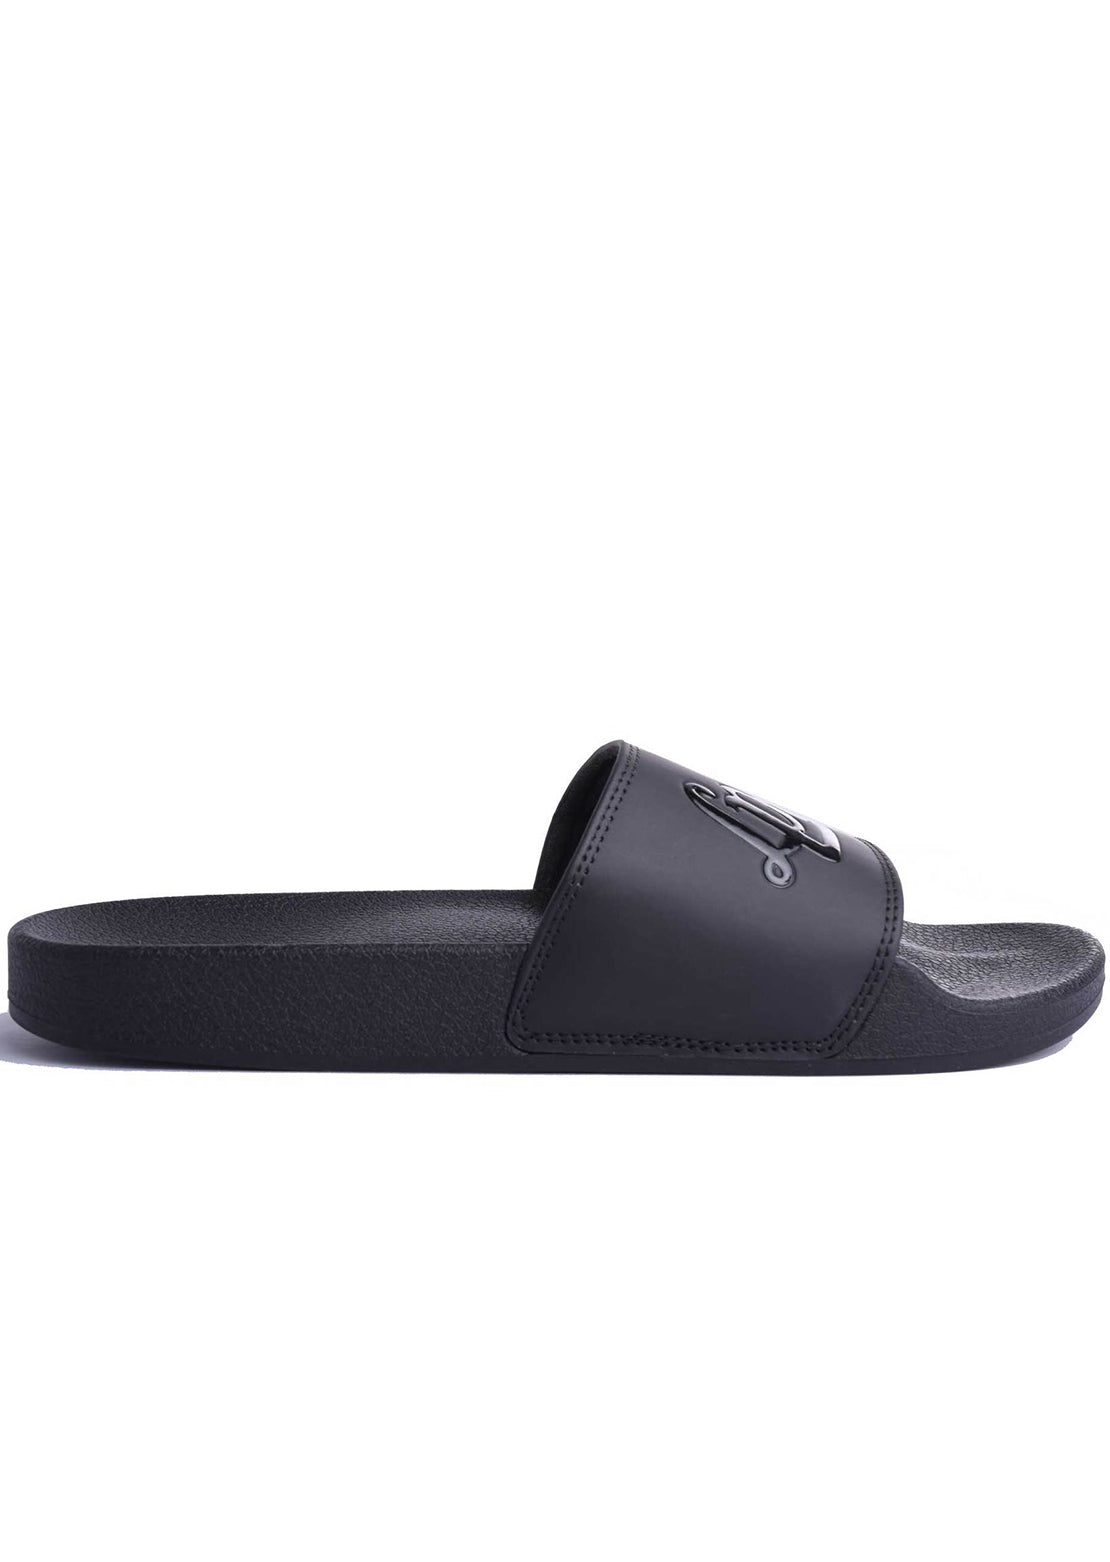 L&amp;P Junior Slide Sandals Black On Black